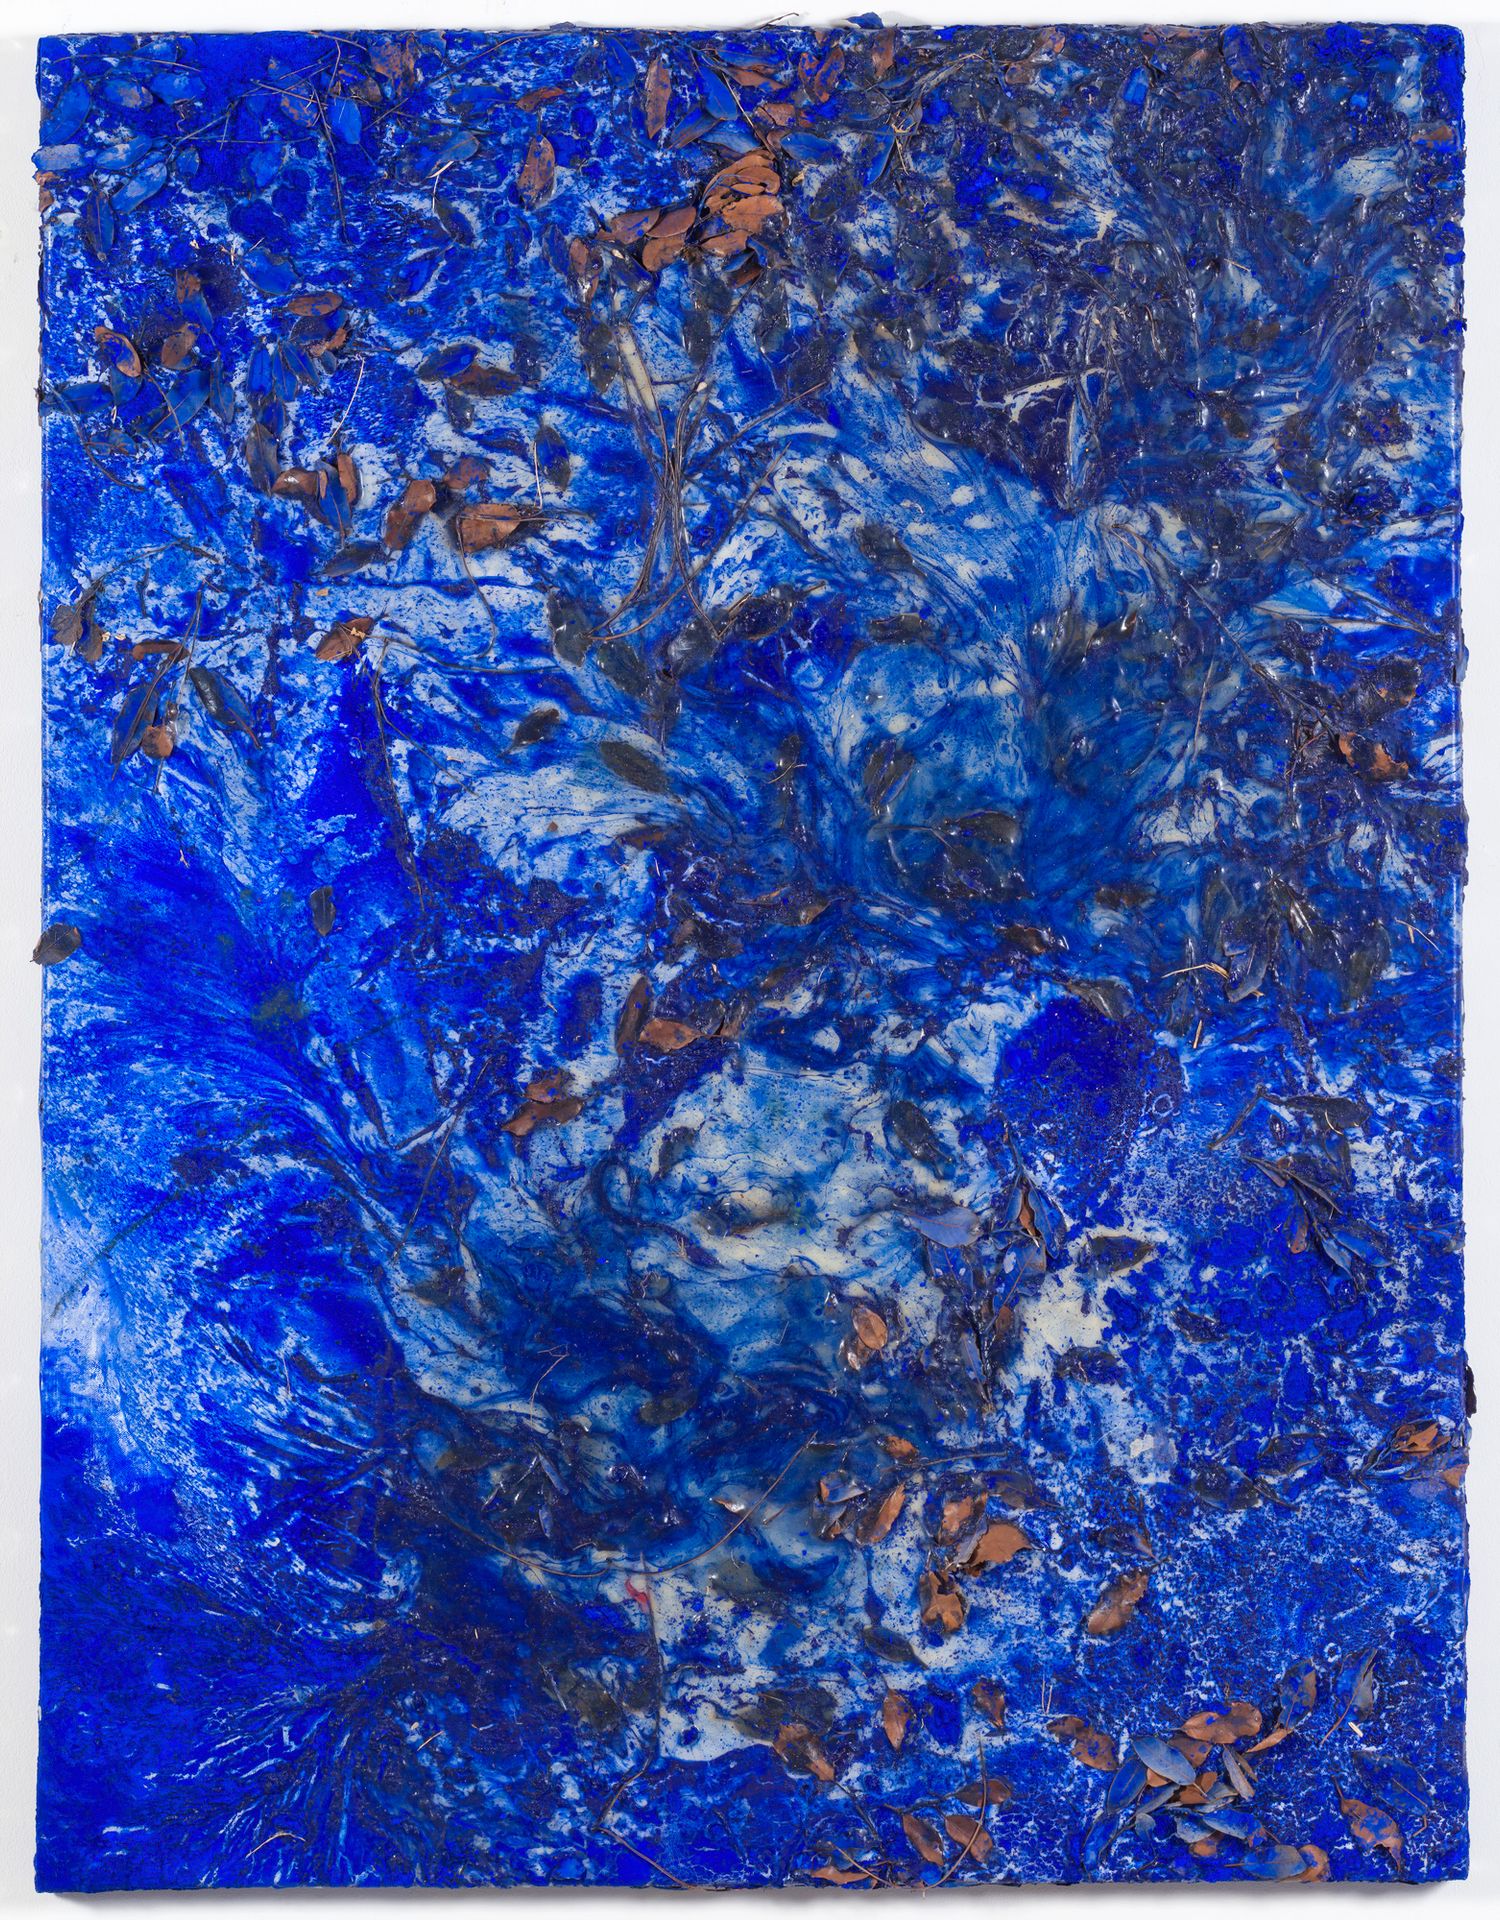 PHILIPPE PASTOR (né en 1961) AR 
Zusammensetzung in Blau 
2018

In blauem Pigmen&hellip;